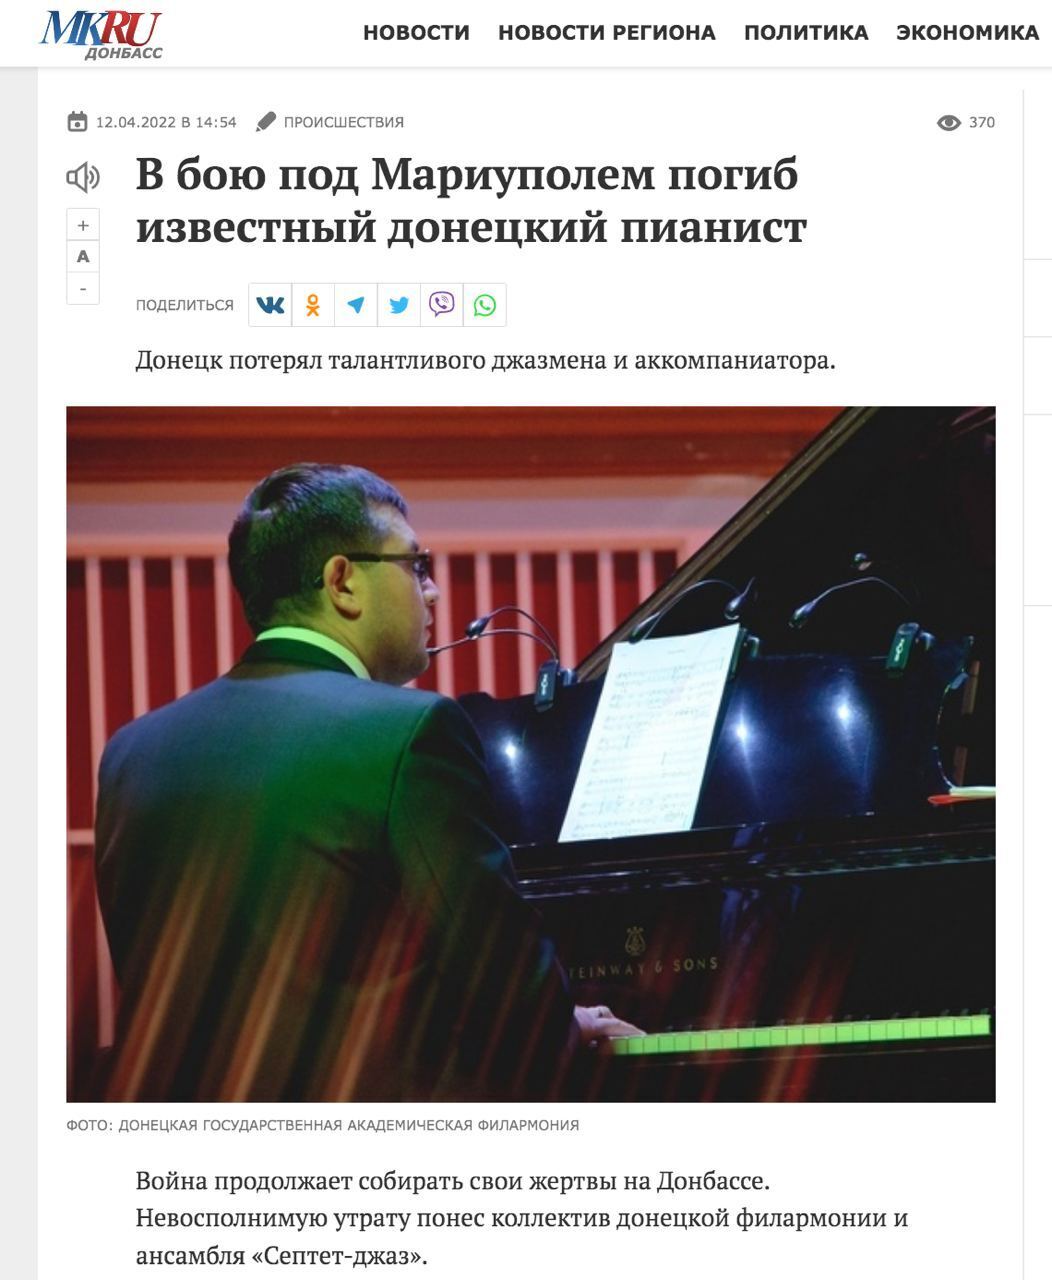 Российское издание "MK.RU" написало о гибели под Мариуполем донецкого музыканта